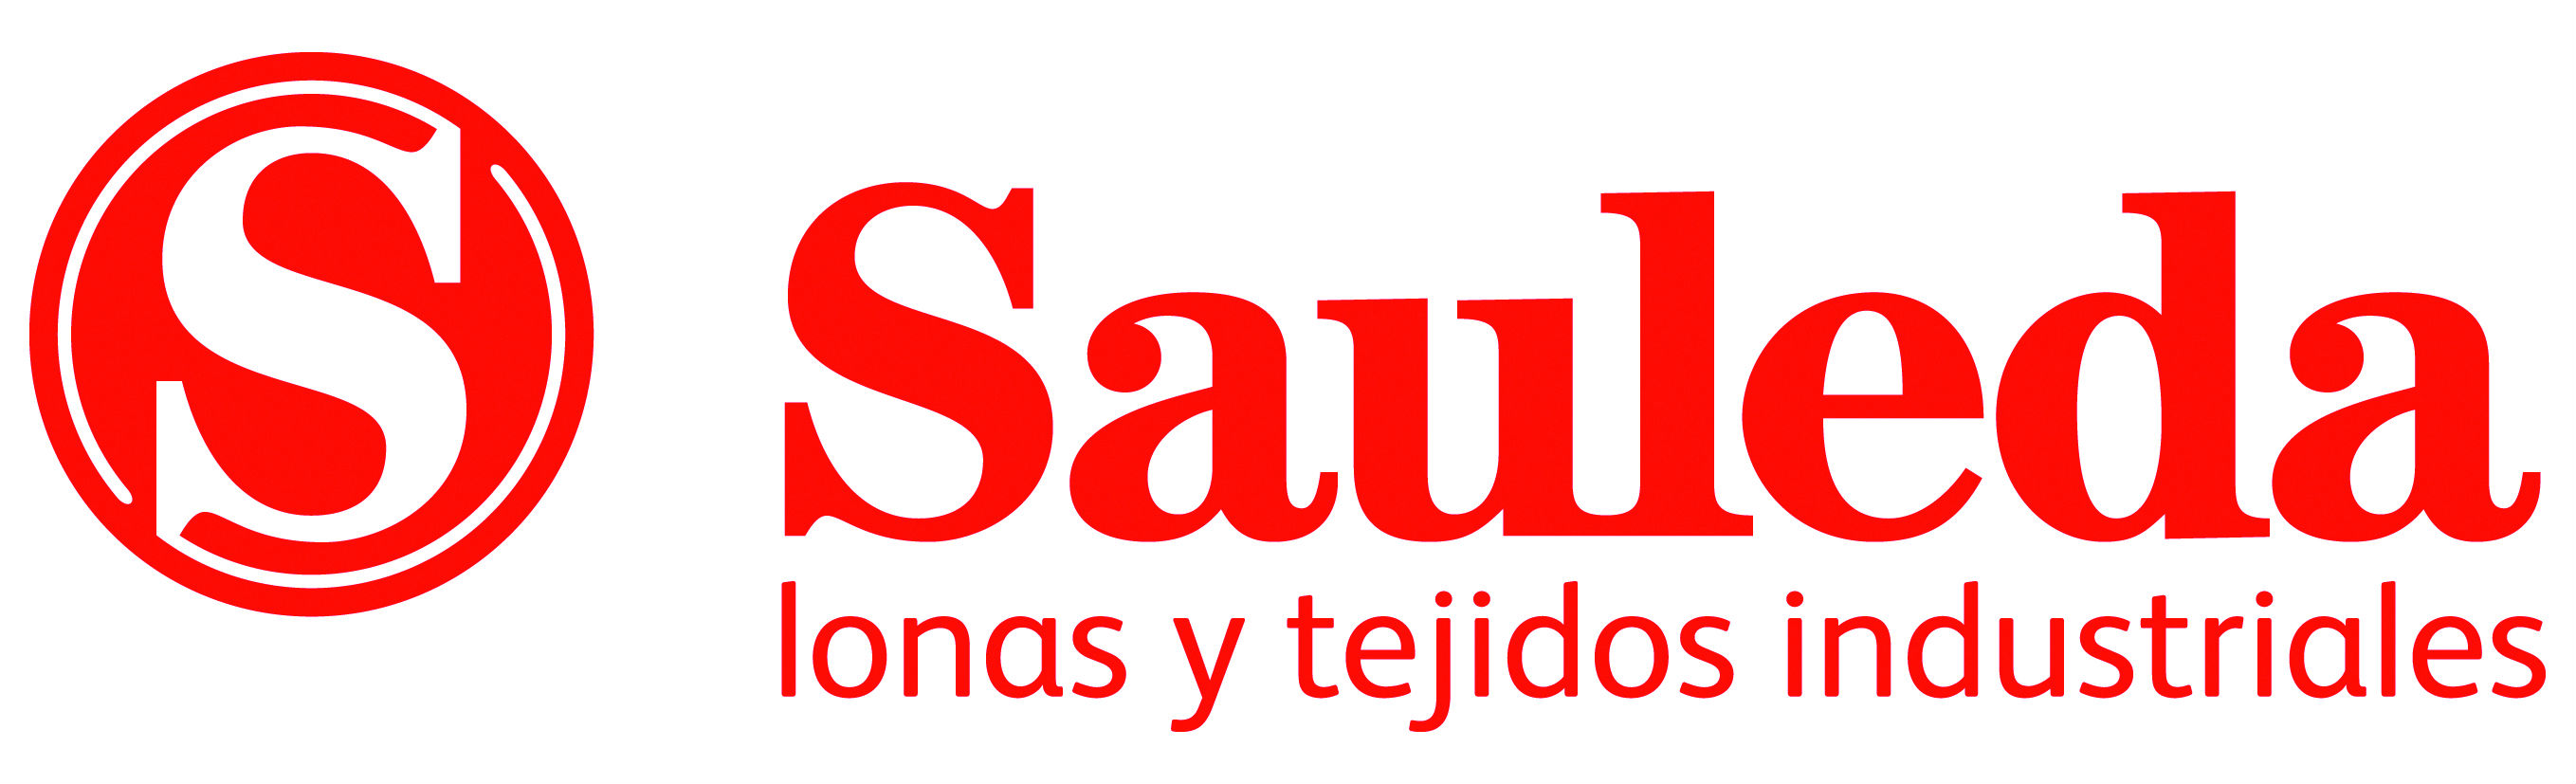 Imagen de la empresa Sauleda a la que se le ofrecen los descuentos